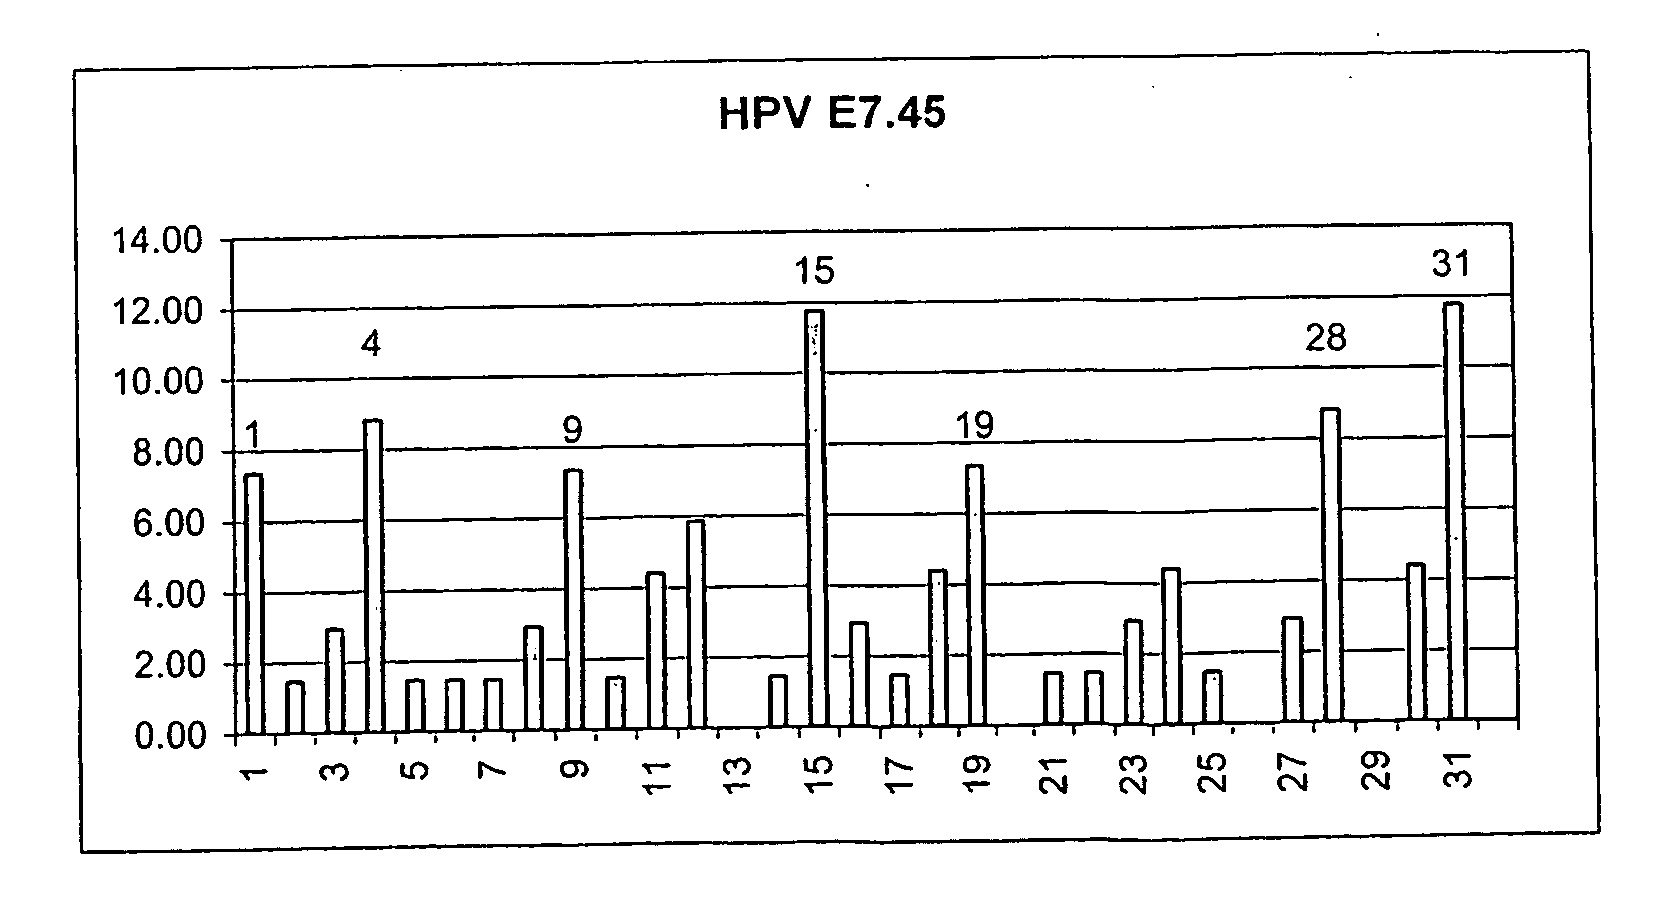 Cd4+ human papillomavirus (hpv) epitopes